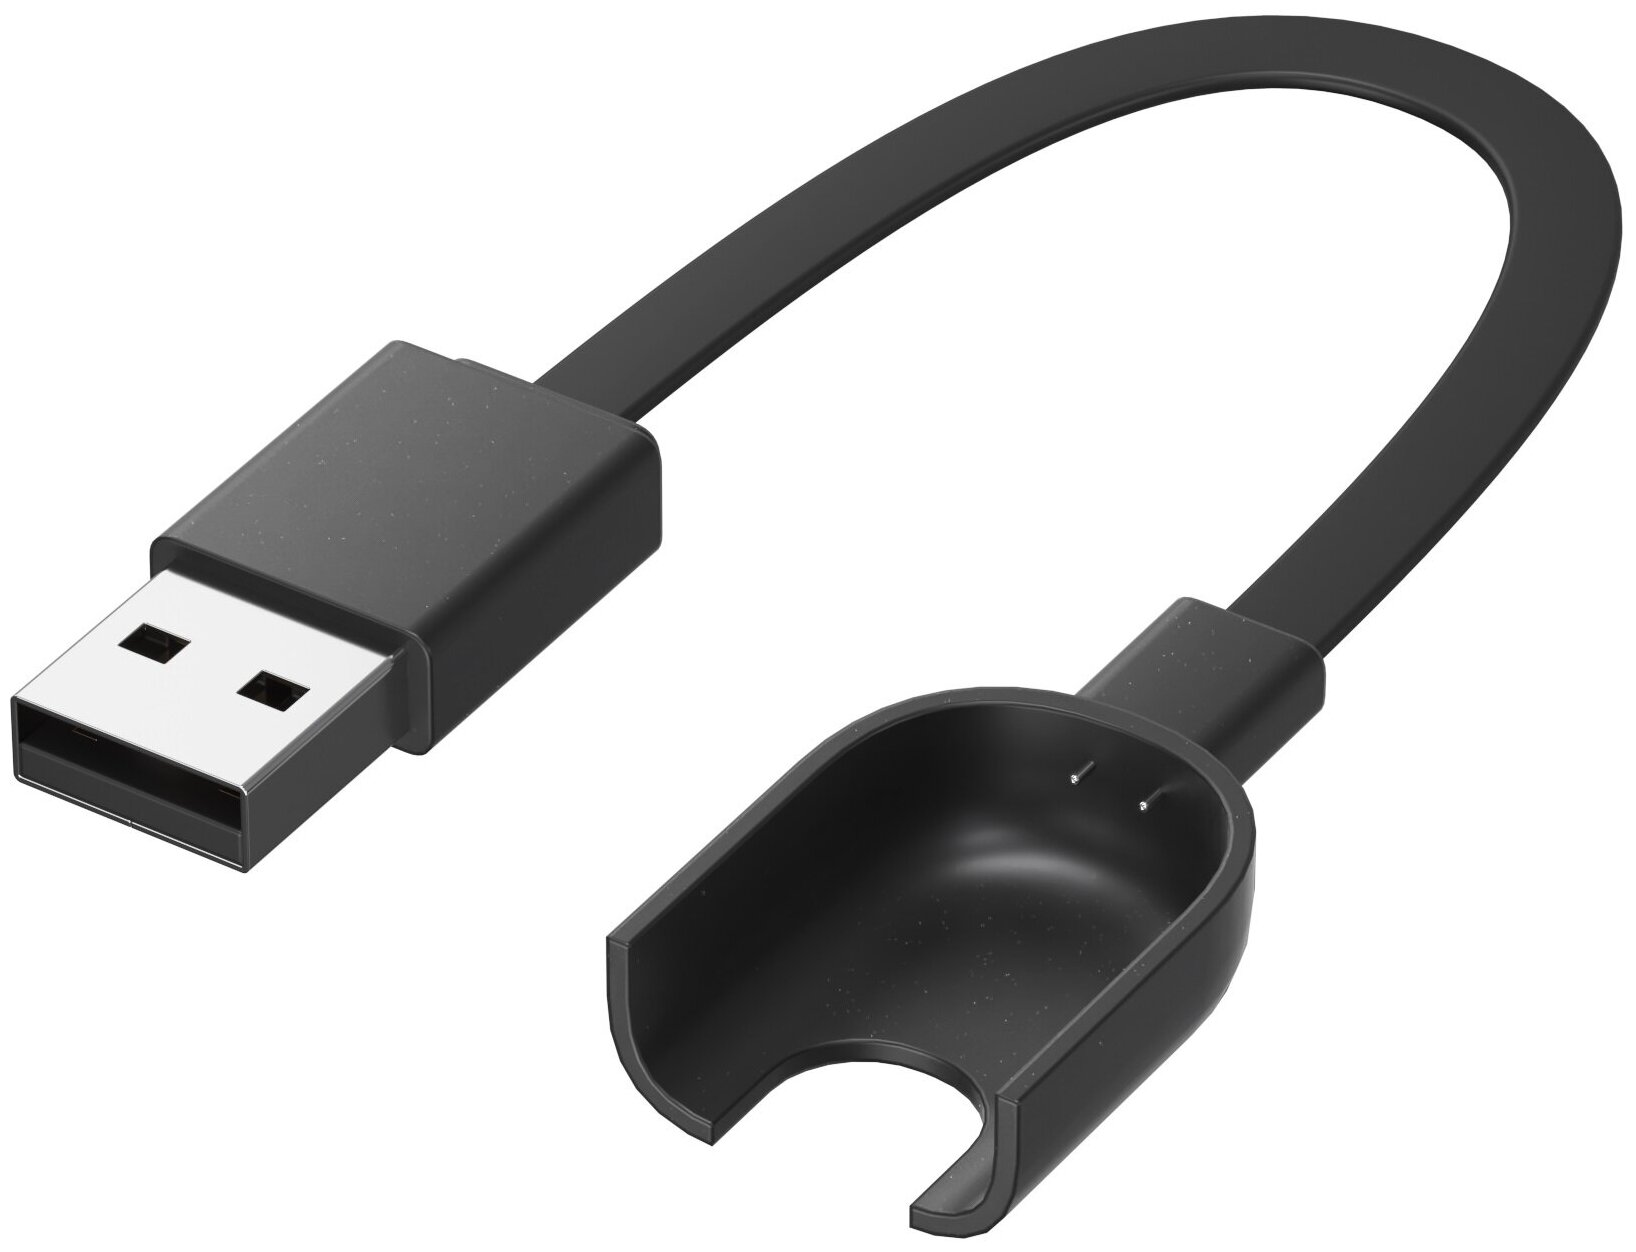 USB кабель GSMIN для зарядки Xiaomi Mi Band 2 Сяоми / Ксяоми Ми Бэнд, зарядное устройство (Черный)